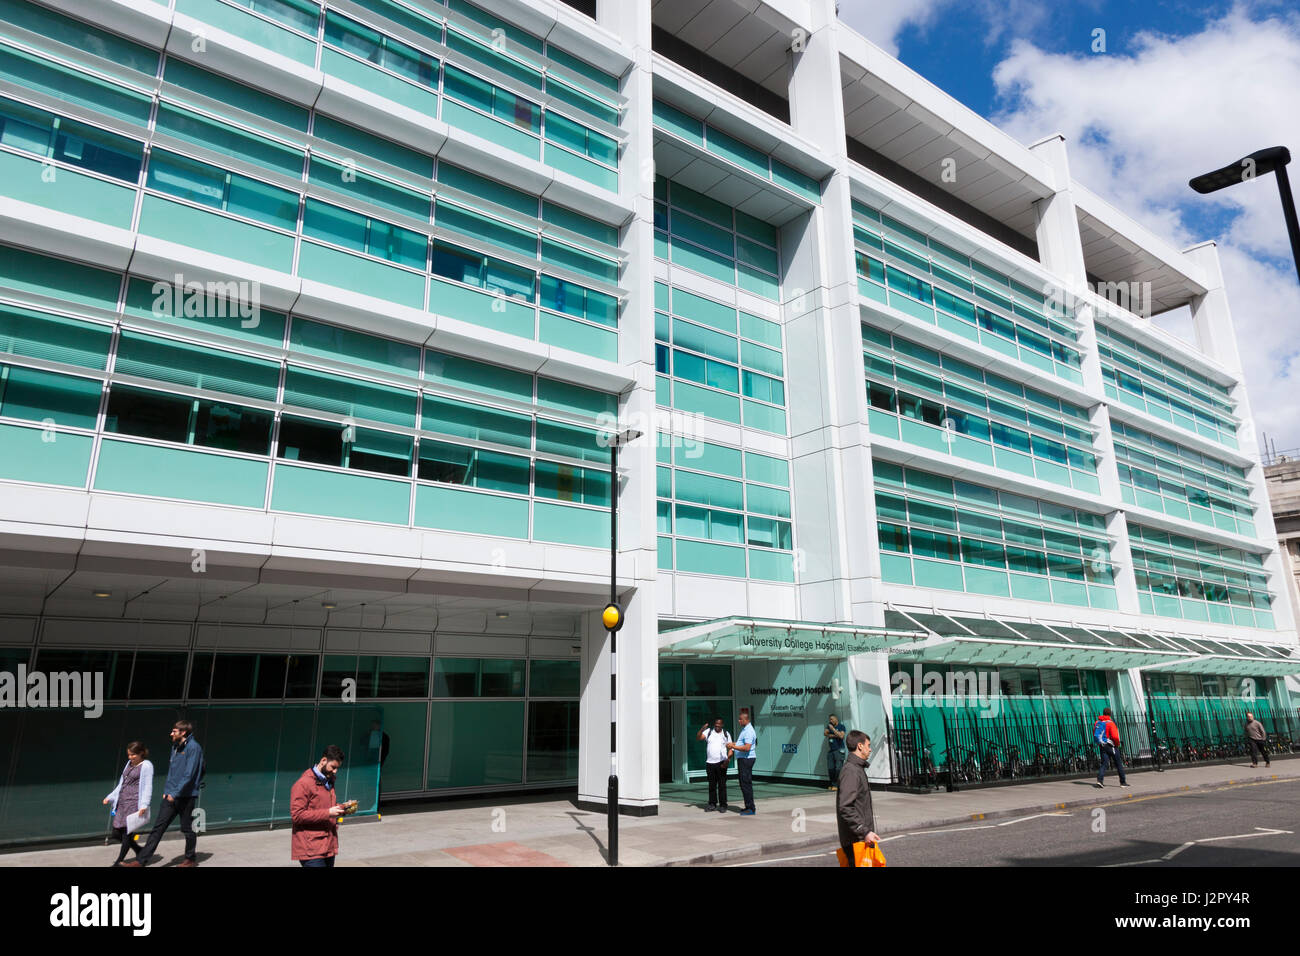 La parte delantera exterior y entrada del University College Hospital de Londres; el Elizabeth Garret Anderson ala. Día soleado con el cielo azul. En el Reino Unido. Foto de stock